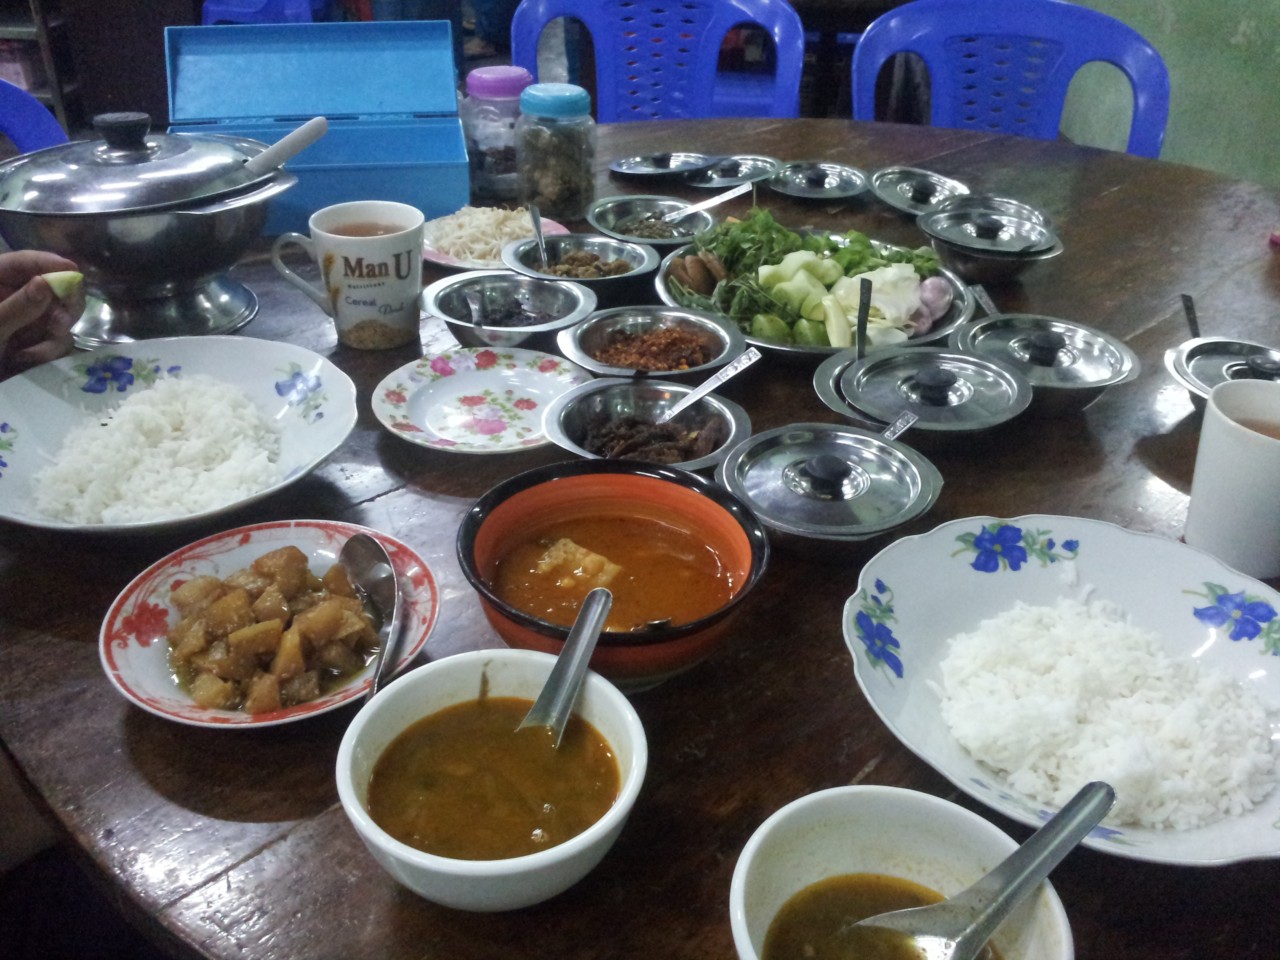 Burmanisches Gericht. Man bekommt immer eine Suppe und viele kleine Beilagen dazu. Die Gerichte werden in der Früh gekocht und bis abends in Töpfen aufbewahrt. 